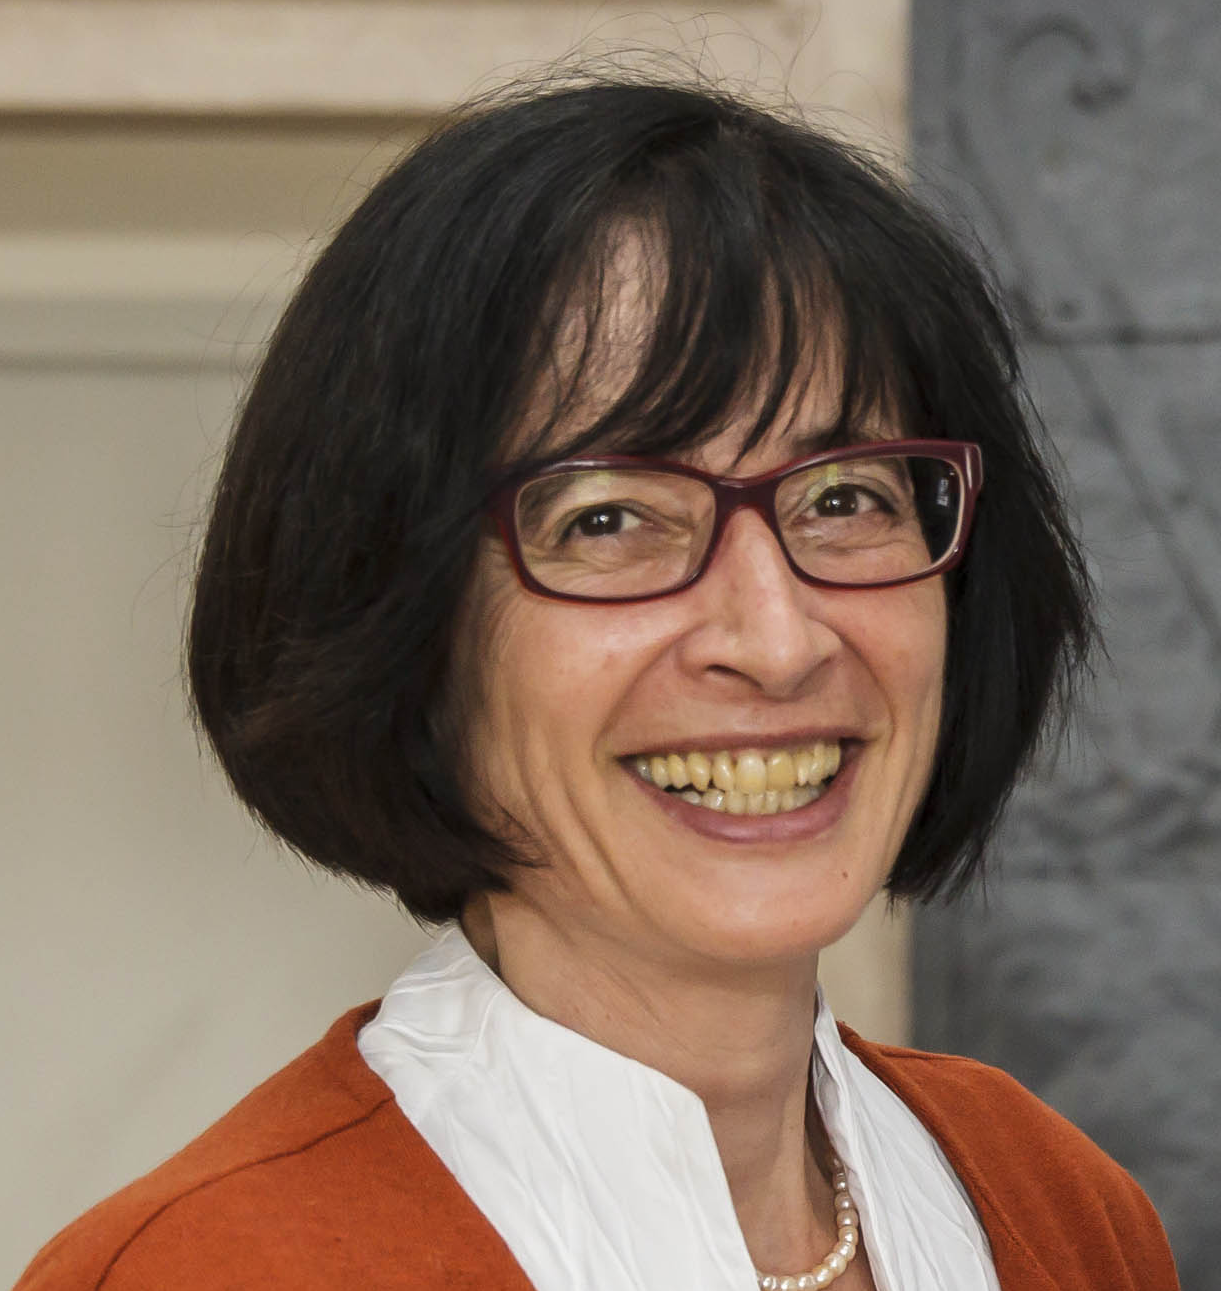 Univ. Prof. Dr. Dorothea Weber